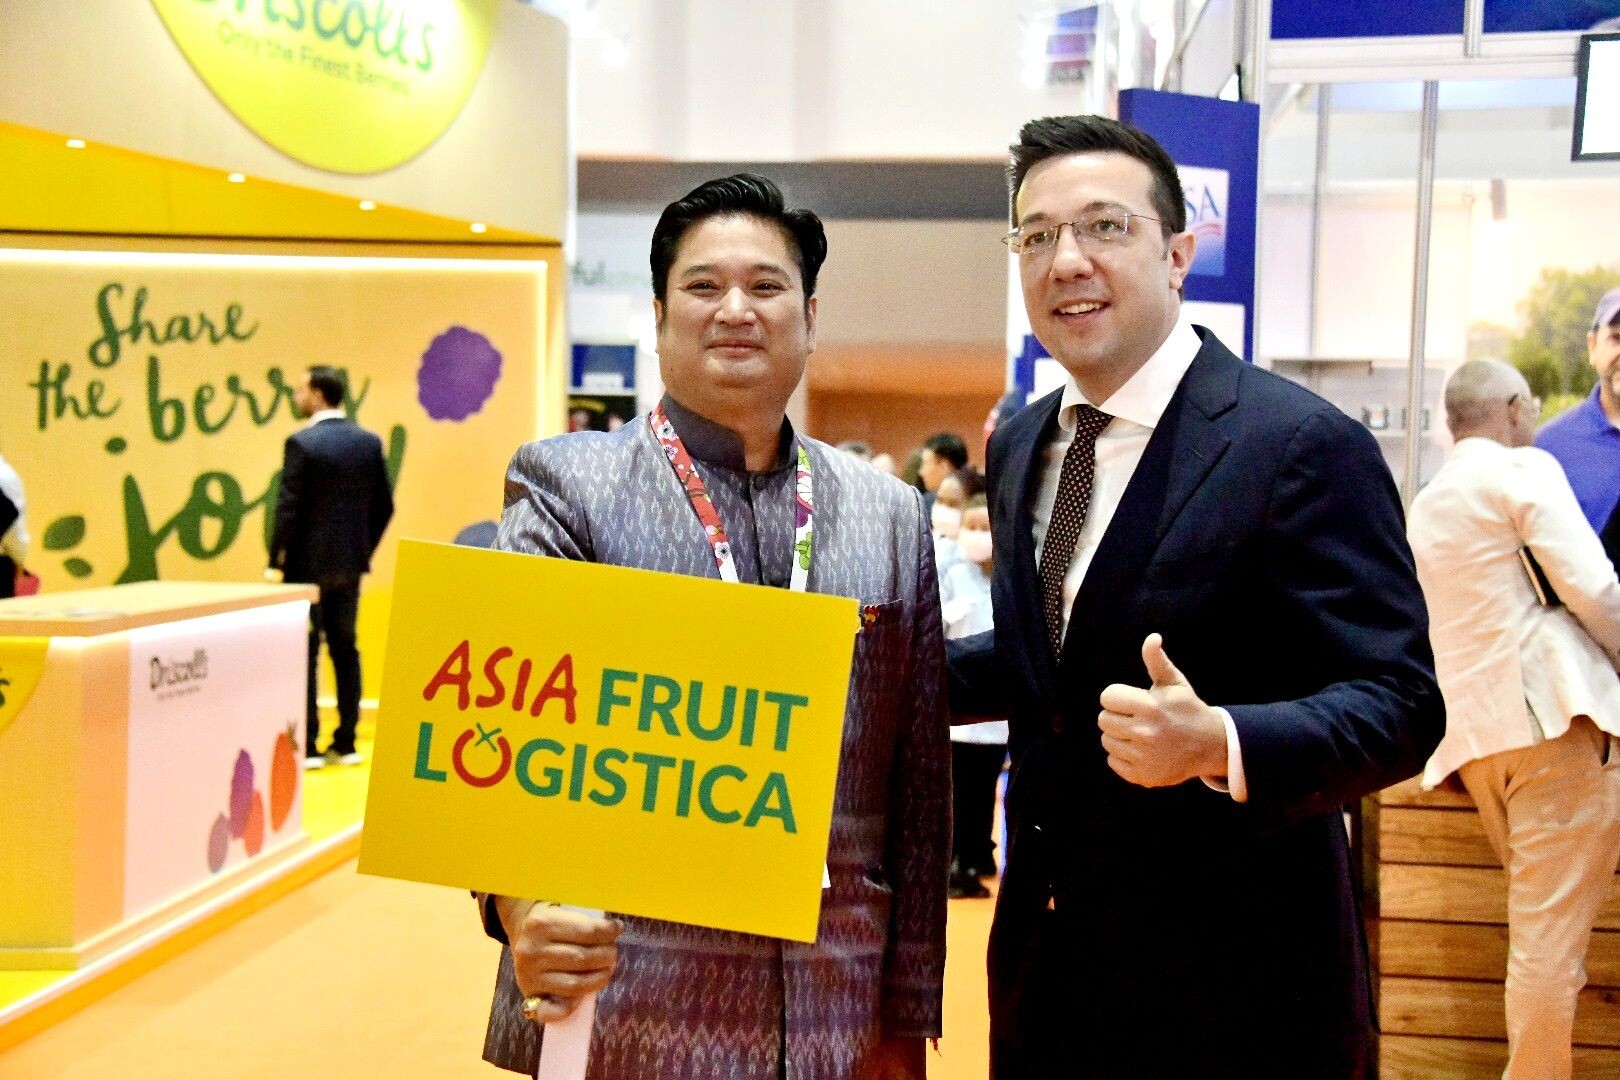 กรมวิชาการเกษตรร่วม Asia Fruit Logistica จัดงานผลไม้ผู้ส่งออกระดับโลก มุ่งเป้ายกระดับโครงสร้างผลไม้ทั้งระบบ